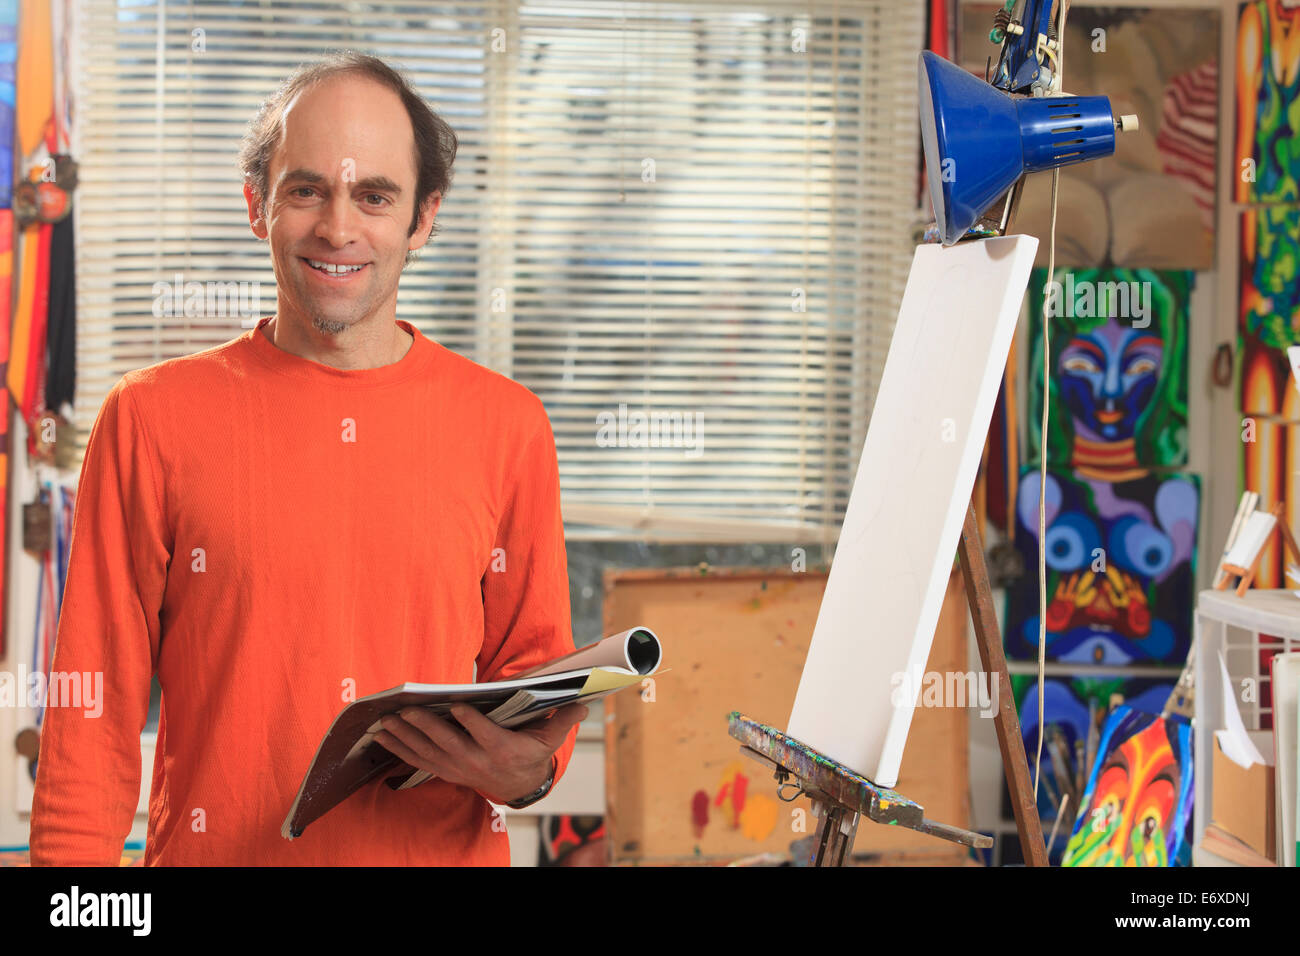 Homme avec Aspergers tenant son matériel de référence pour sa peinture dans un studio d'art Banque D'Images